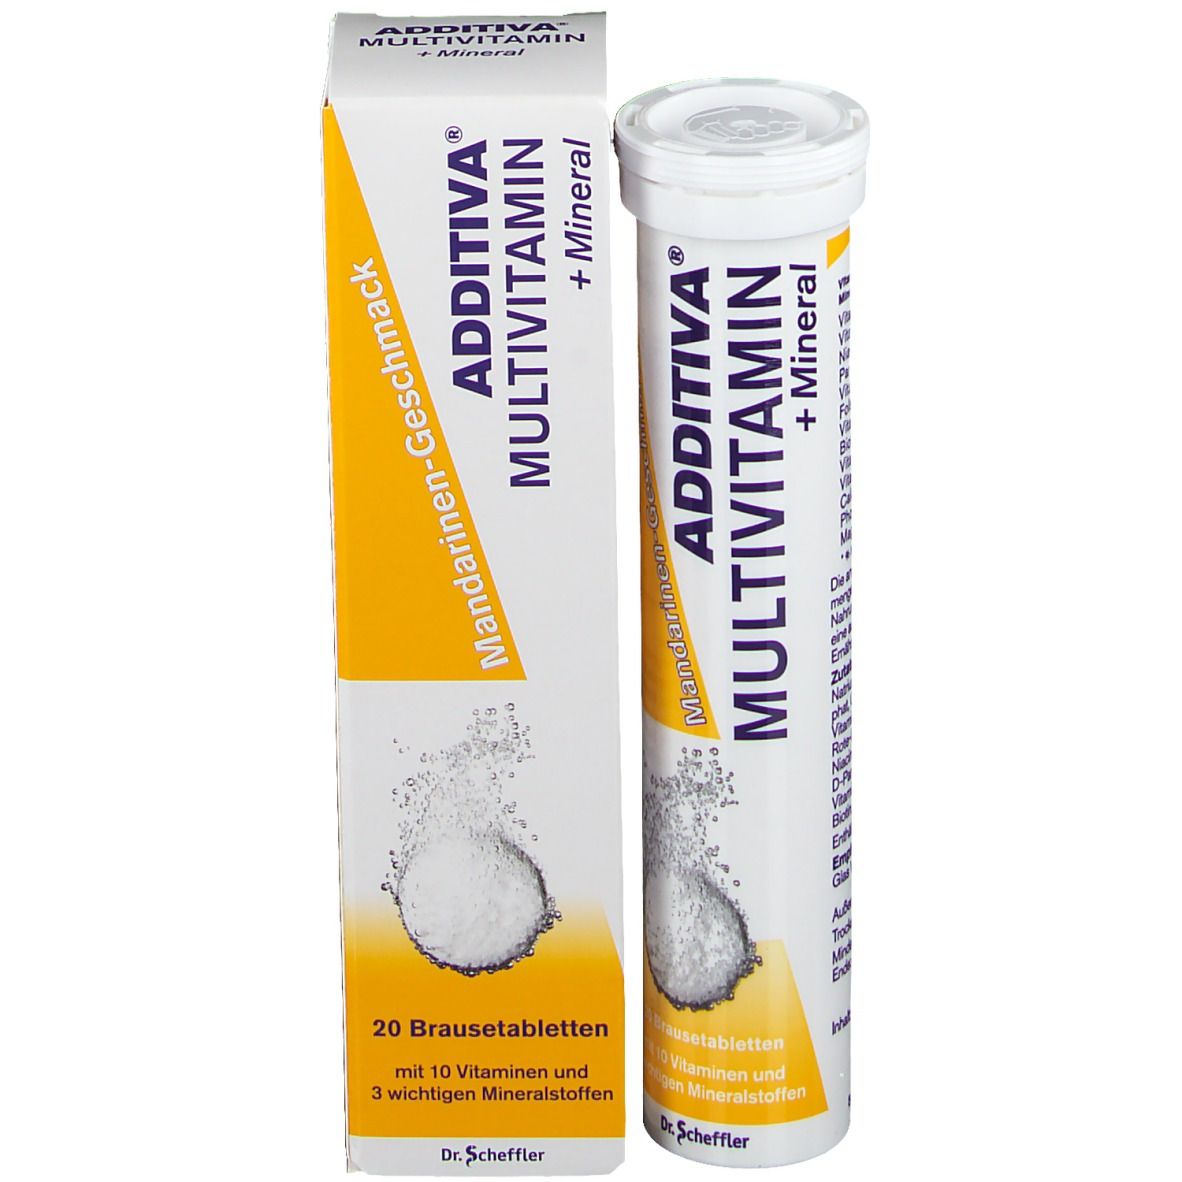 ADDITIVA® Multivitamin + Mineral Mandarinen Geschmack